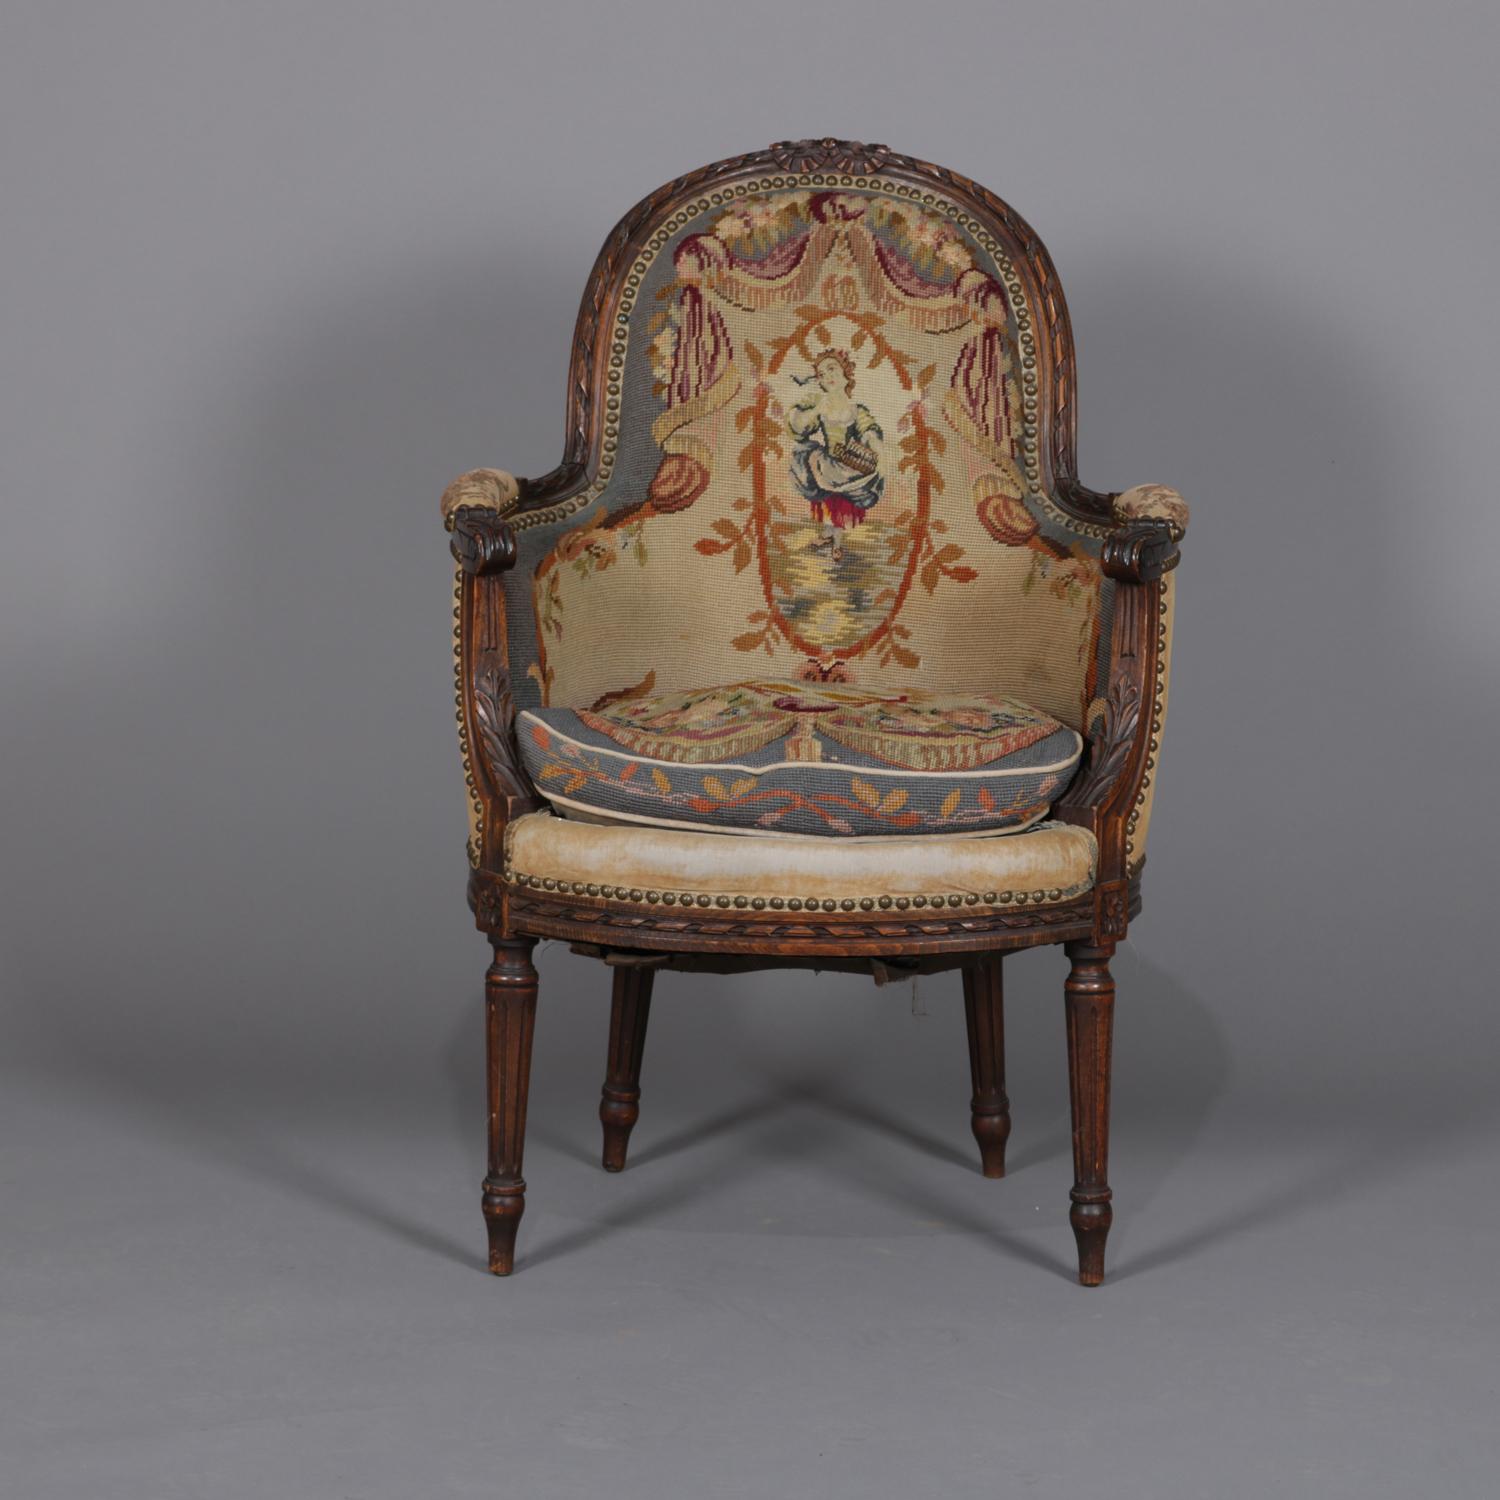 Ein antiker französischer Sessel im Louis XV-Stil mit Mahagoni-Rahmen mit geschnitztem Relief-Ornament und spiralförmigen Armlehnen, gepolstert mit Gobelin mit zentralem Porträt und umlaufendem Blattmotiv, um 1875.

Maße: 37